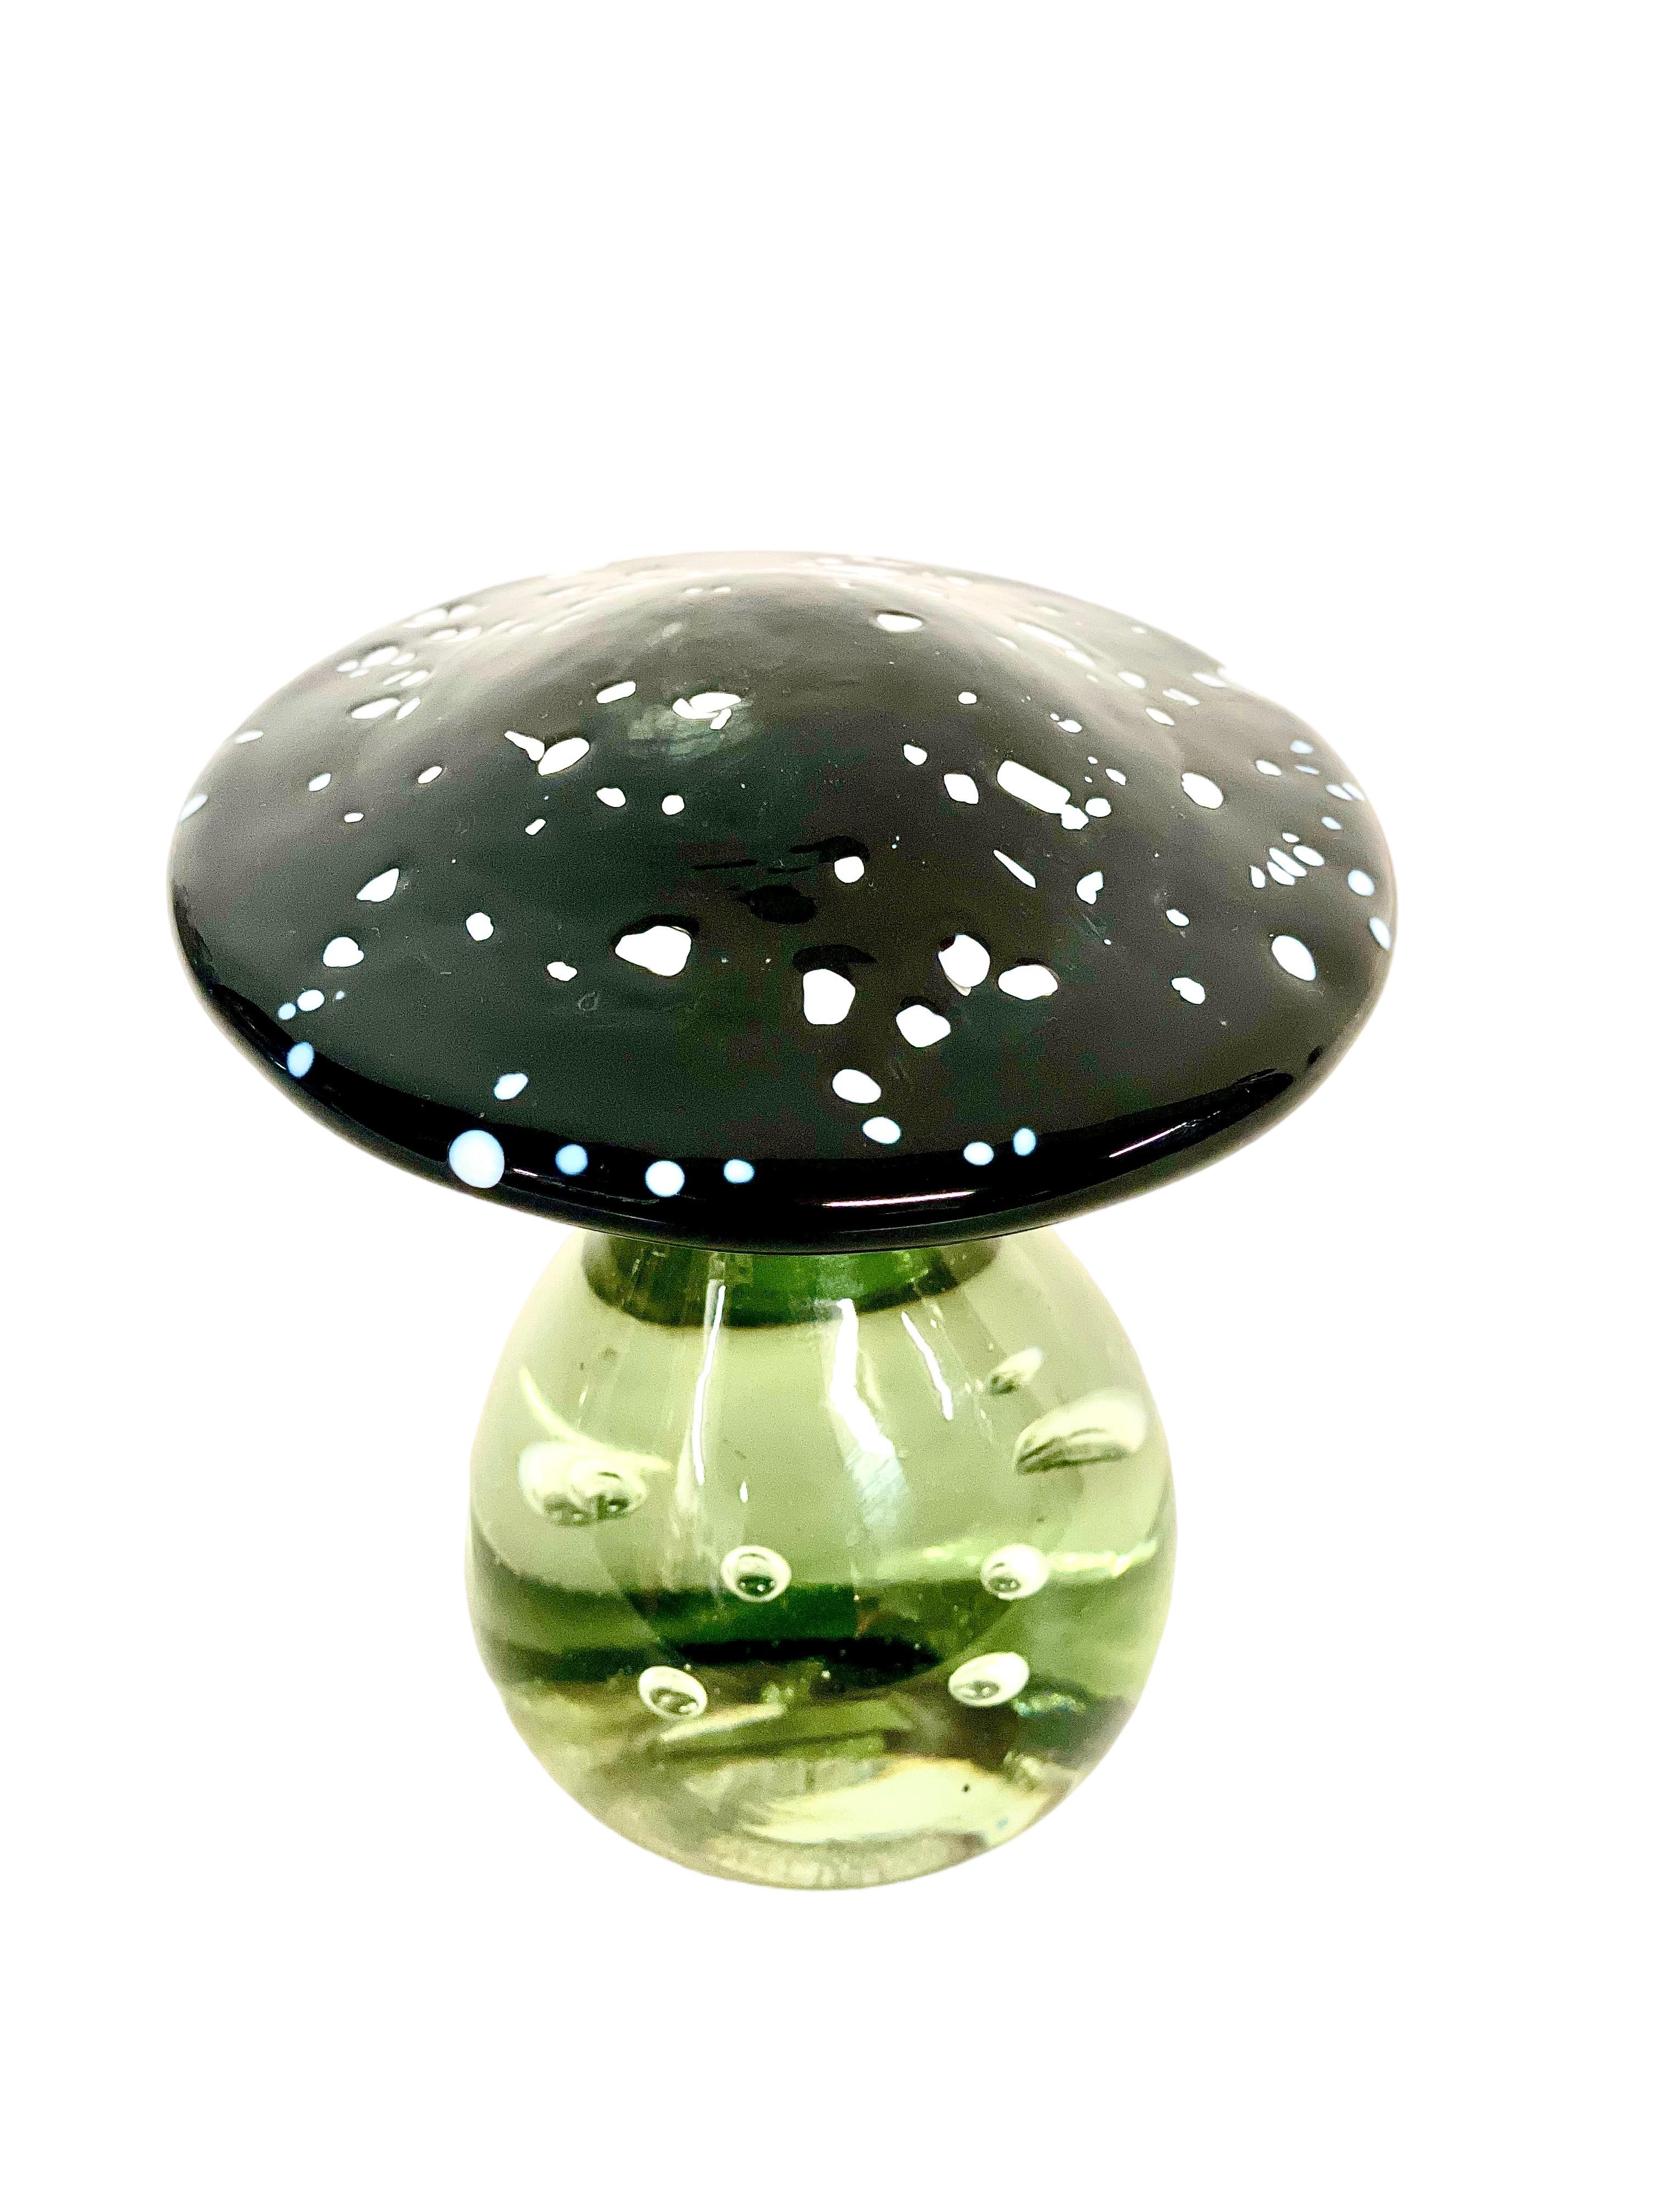 Un inhabituel et très charmant champignon ornemental vintage en verre soufflé, dont la tige transparente est mouchetée de minuscules bulles d'air et surmontée d'un joli chapeau moucheté noir et blanc. Magnifiquement fabriqué à la main en verre de